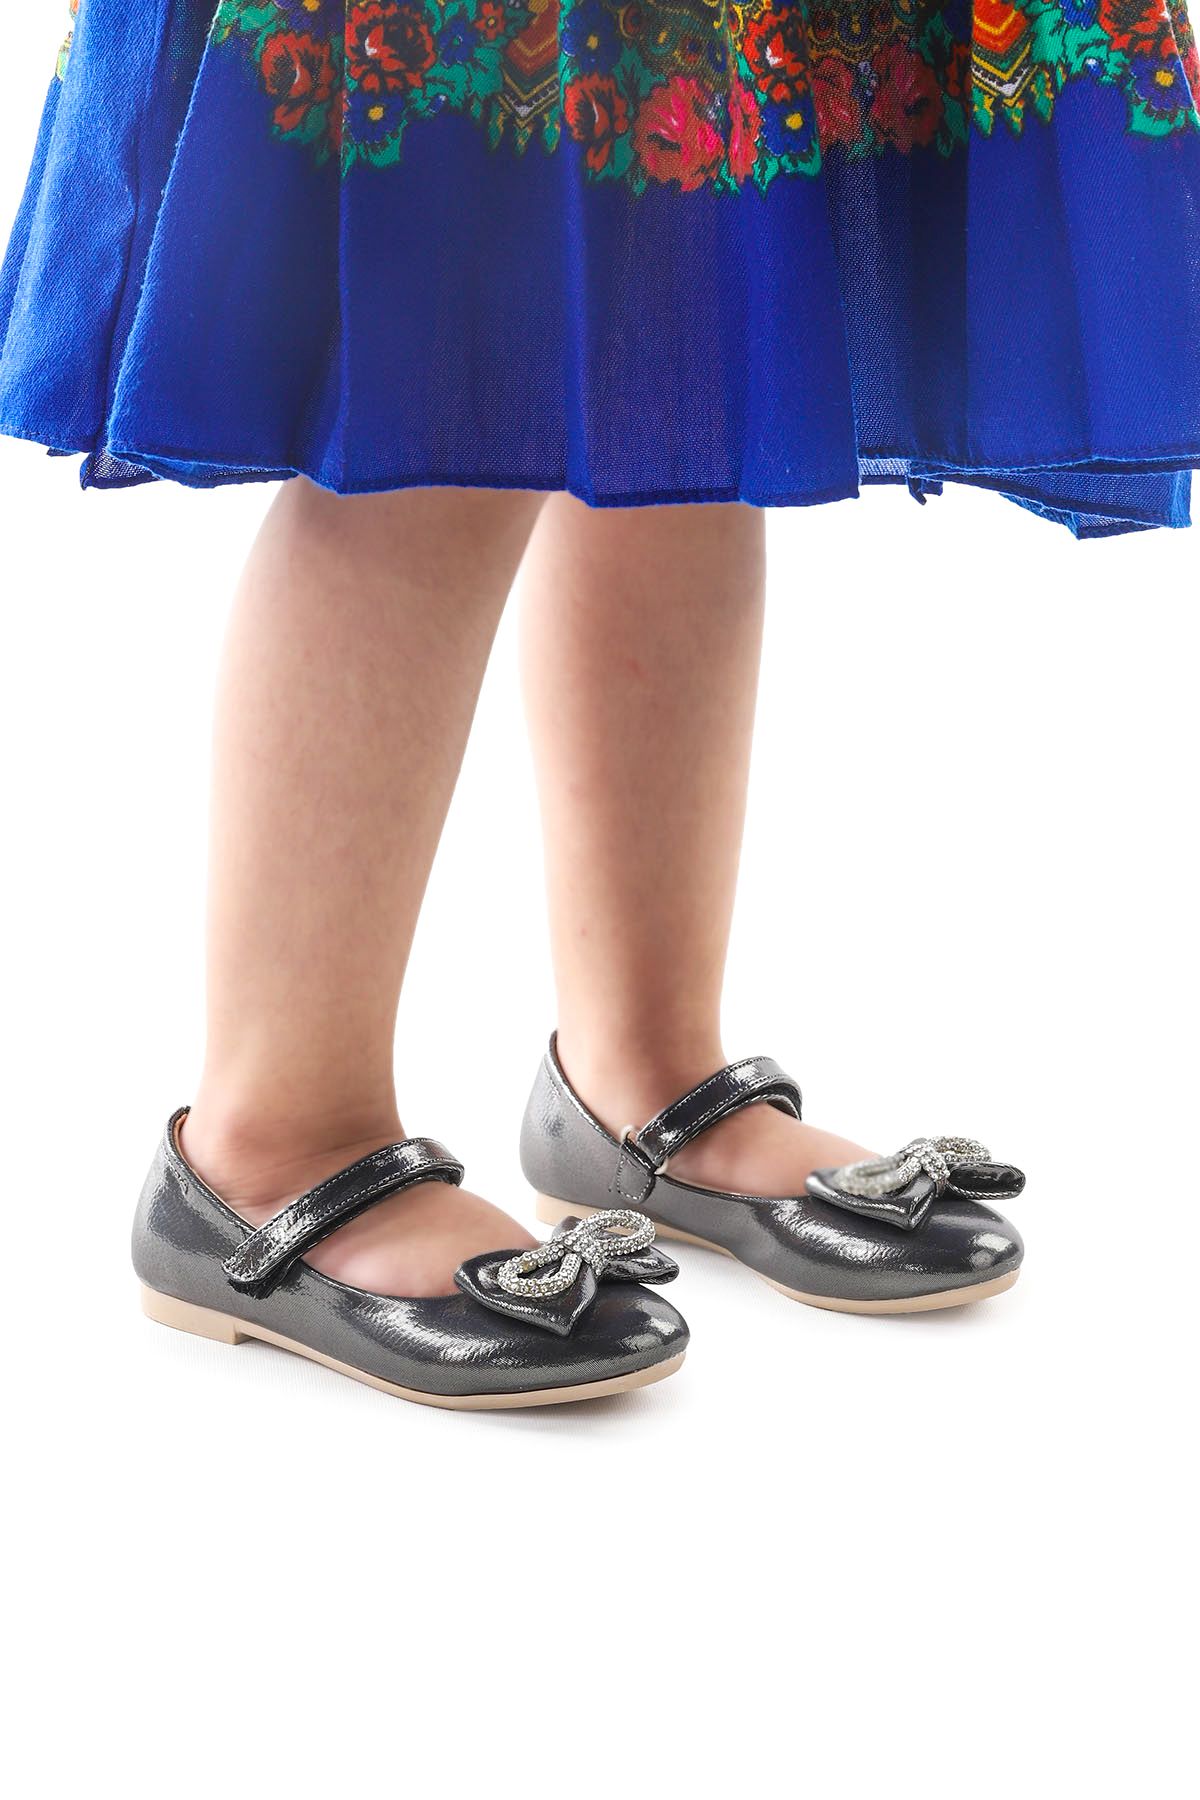 Kiko Kids Papyon Taşlı Cırtlı Kız Çocuk Babet Ayakkabı 254 Vakko